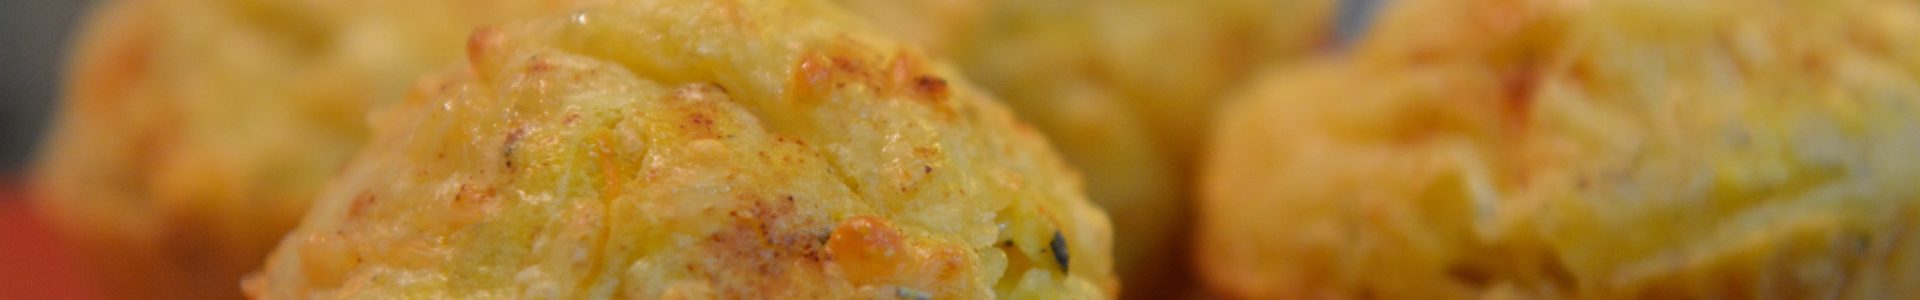 Muffiny z żółtym serem